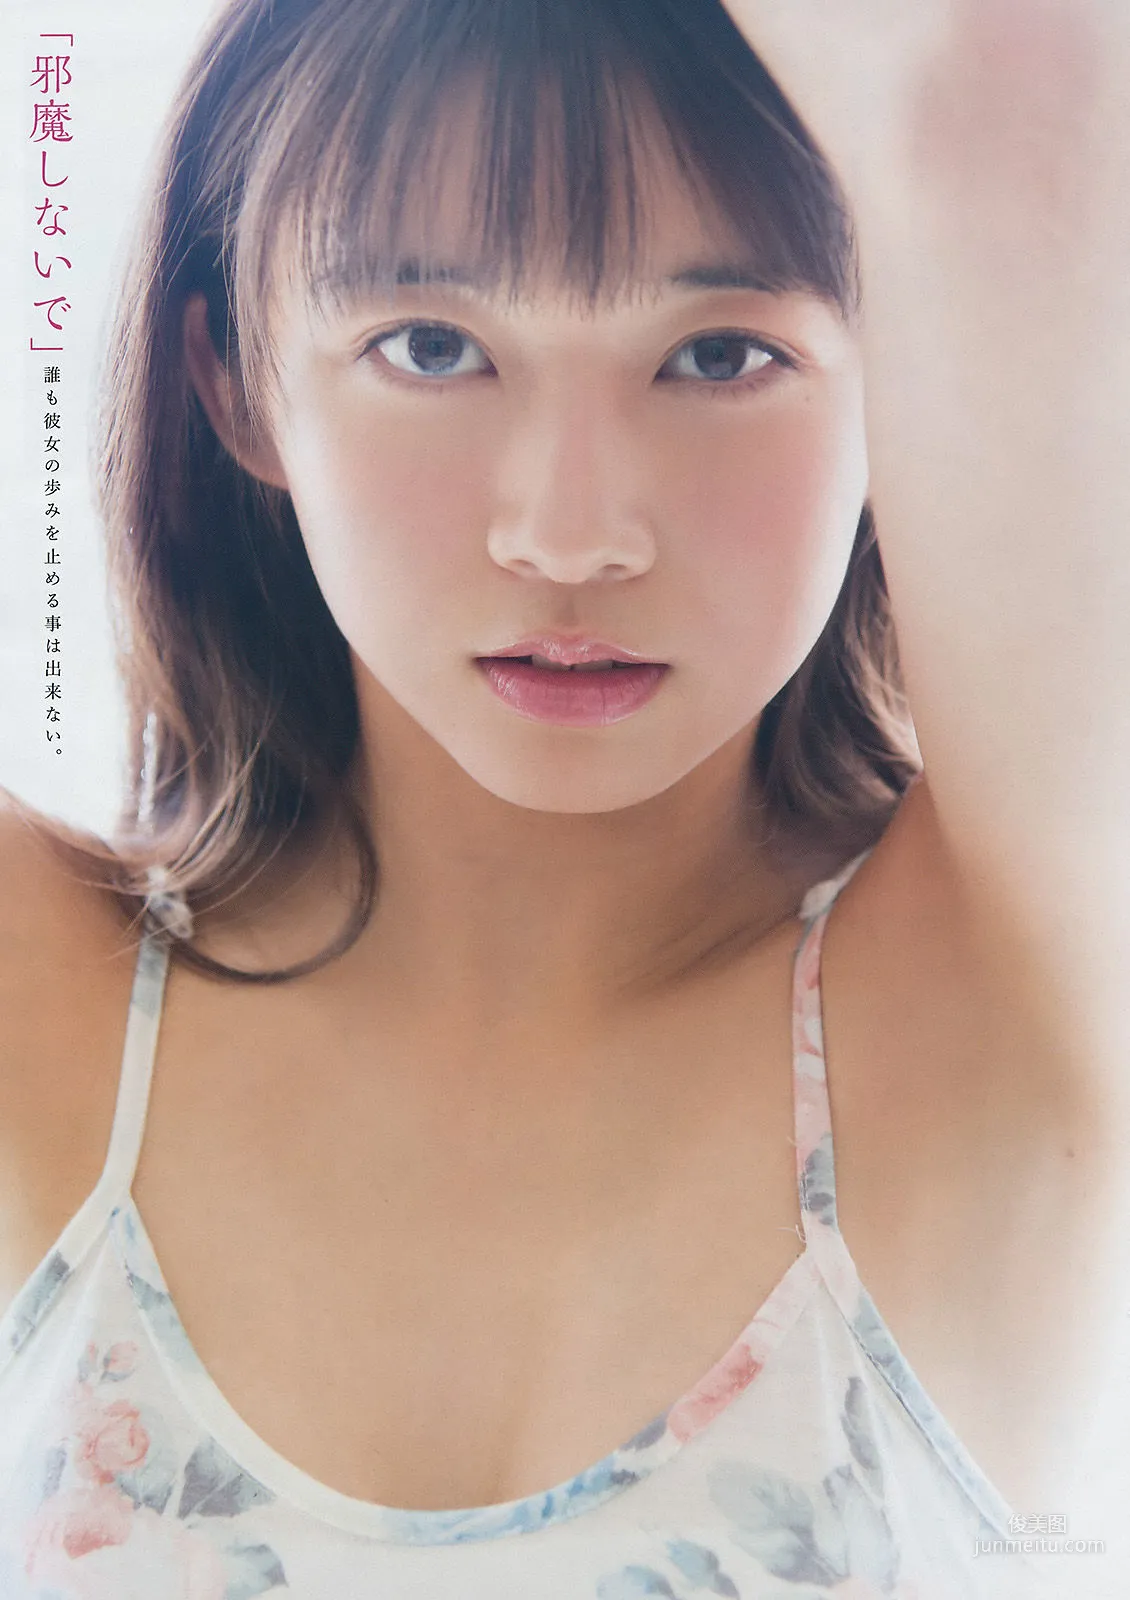 [Young Magazine] 牧野真莉愛 森戸知沙希 2017年No.44 写真杂志6